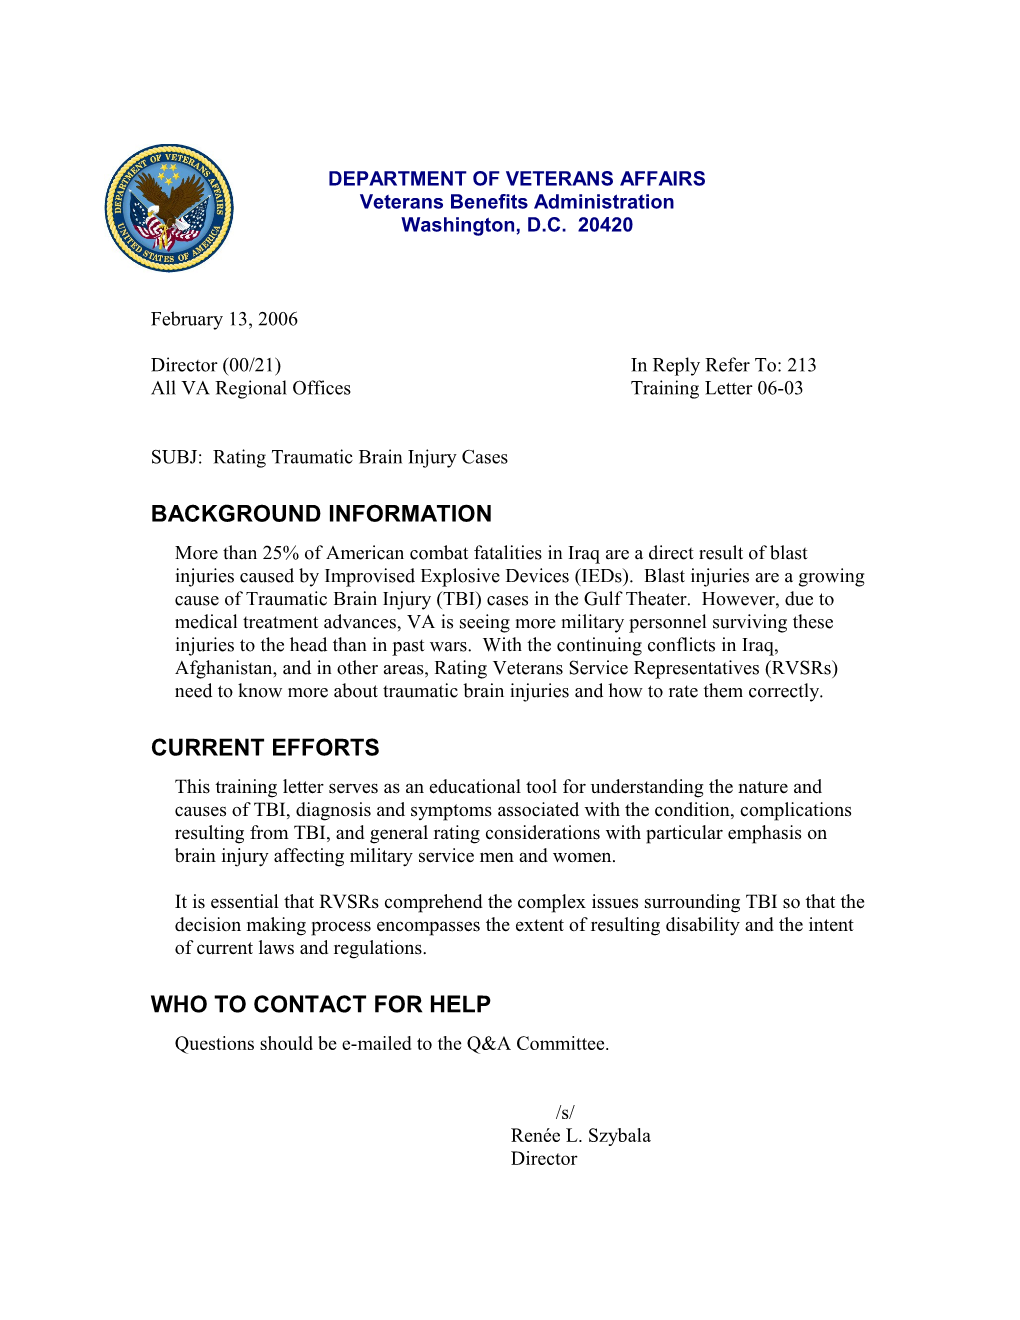 All VA Regional Officestraining Letter 06-03